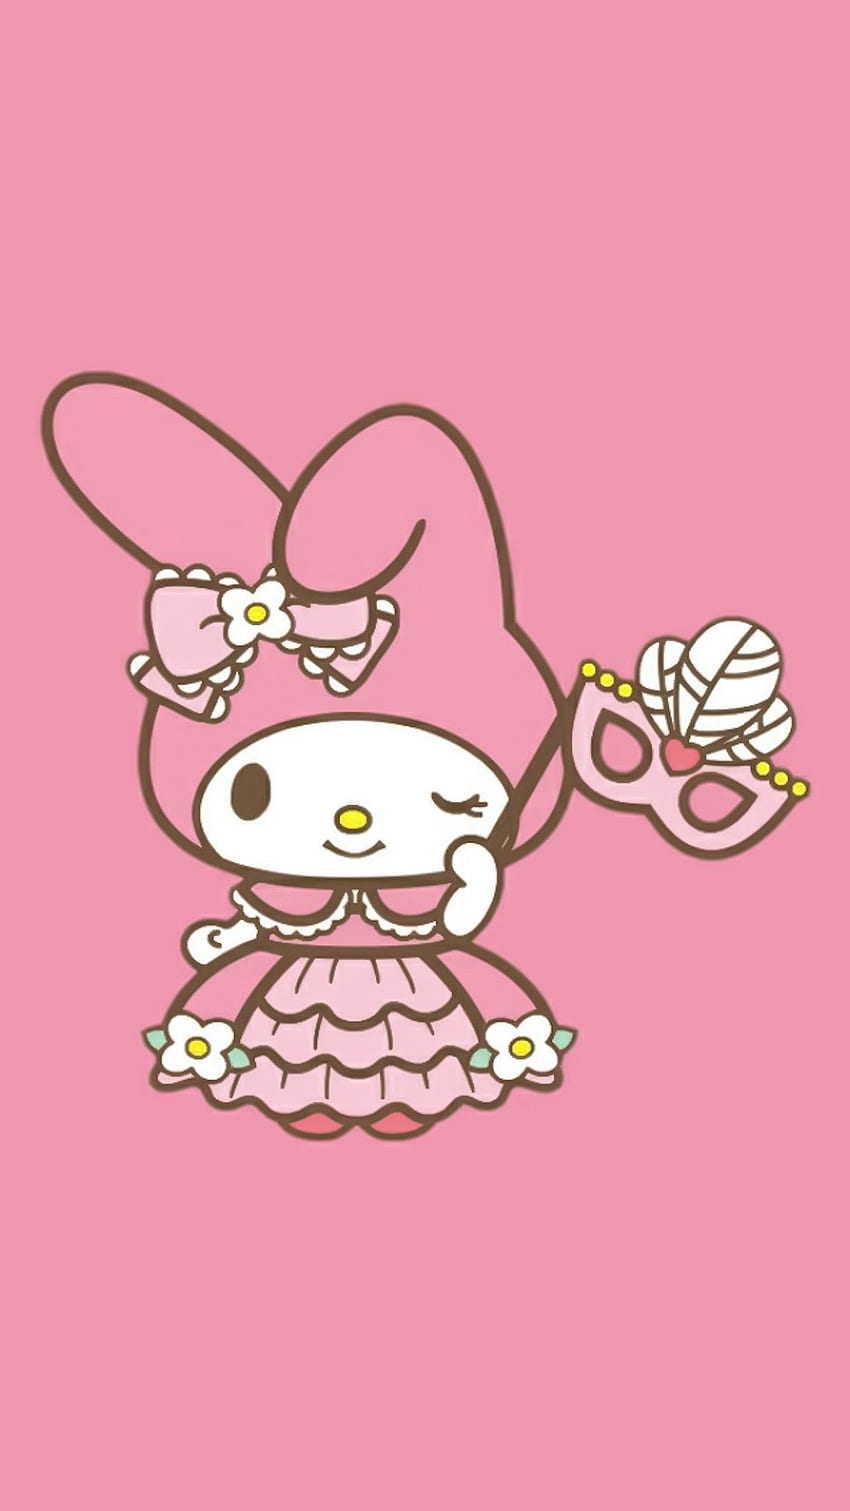 Hello Kitty My Melody, hai nhân vật đáng yêu và cực kỳ phổ biến trong giới trẻ hiện nay sẽ mang đến cho bạn sự ngọt ngào và tinh tế. Hãy cùng xem hình ảnh liên quan để khám phá thêm về những chủ đề và mẫu mã đầy sáng tạo của chúng!